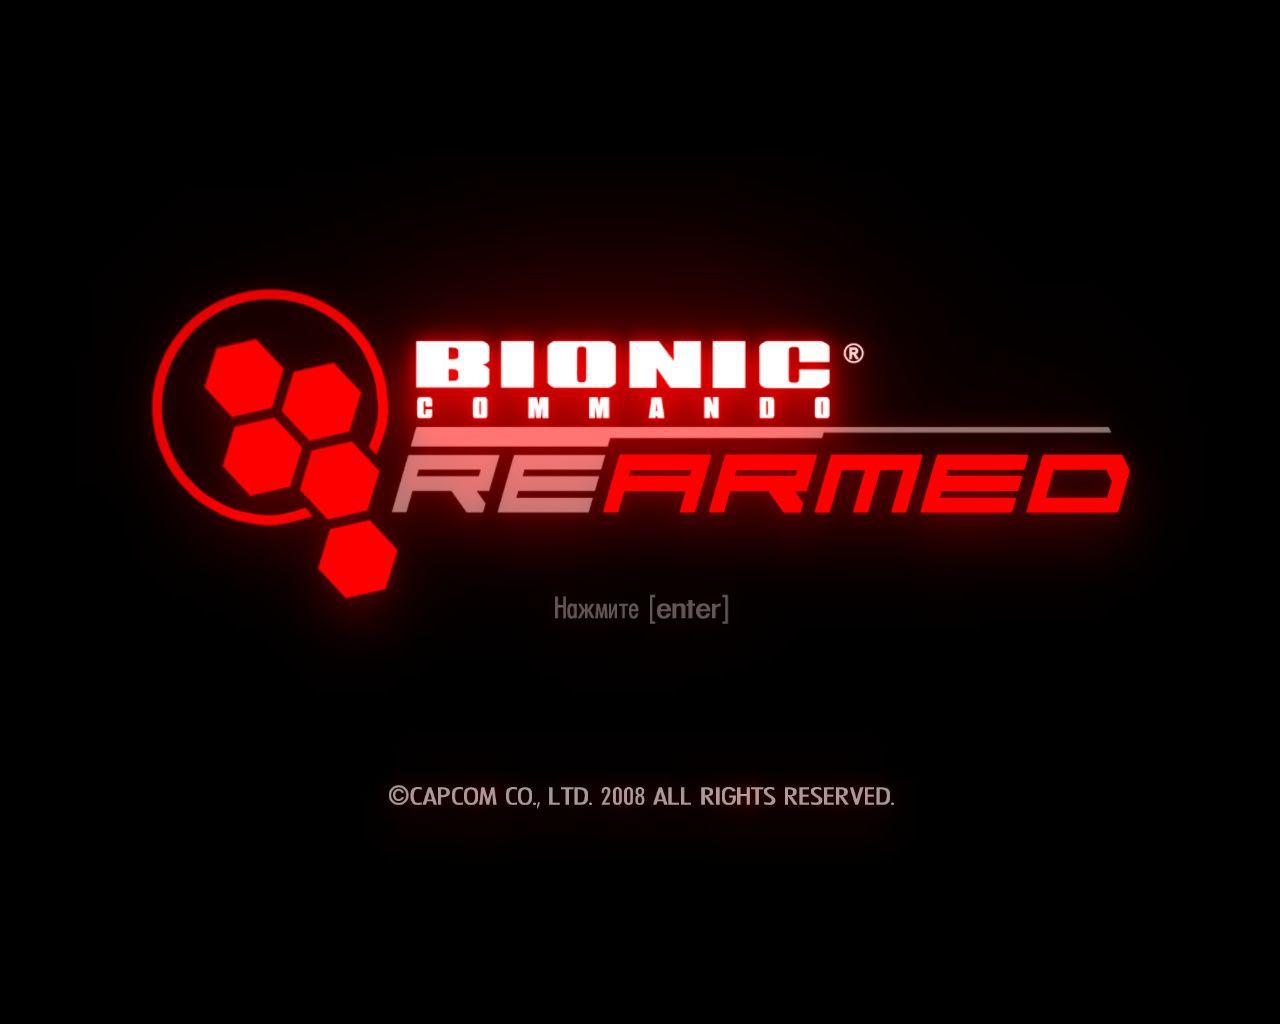 download free bionic rearmed